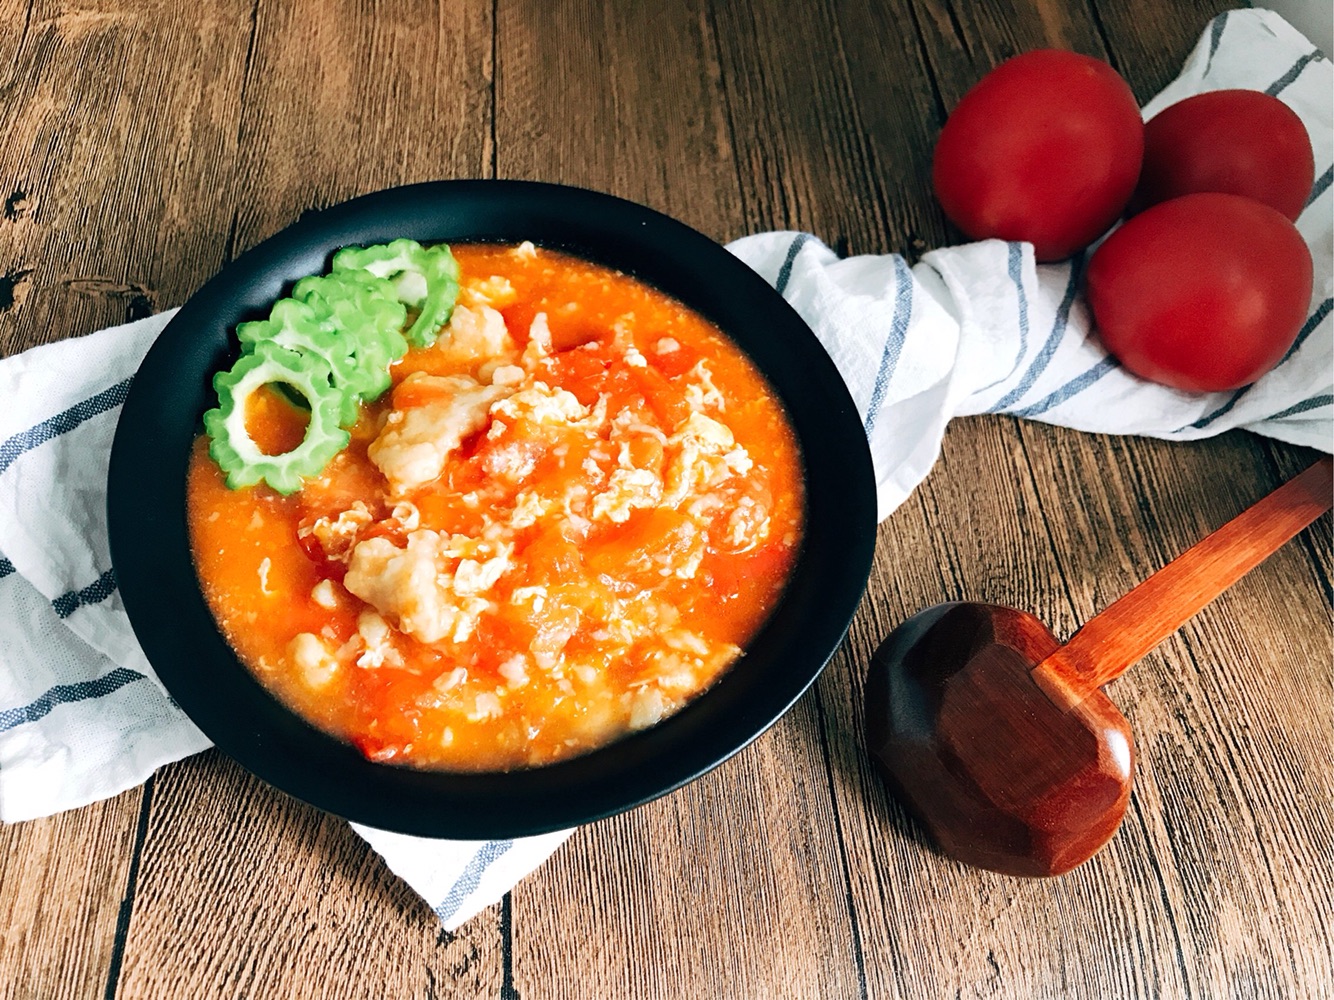 西红柿鸡蛋疙瘩汤 超简单快手 家的味道